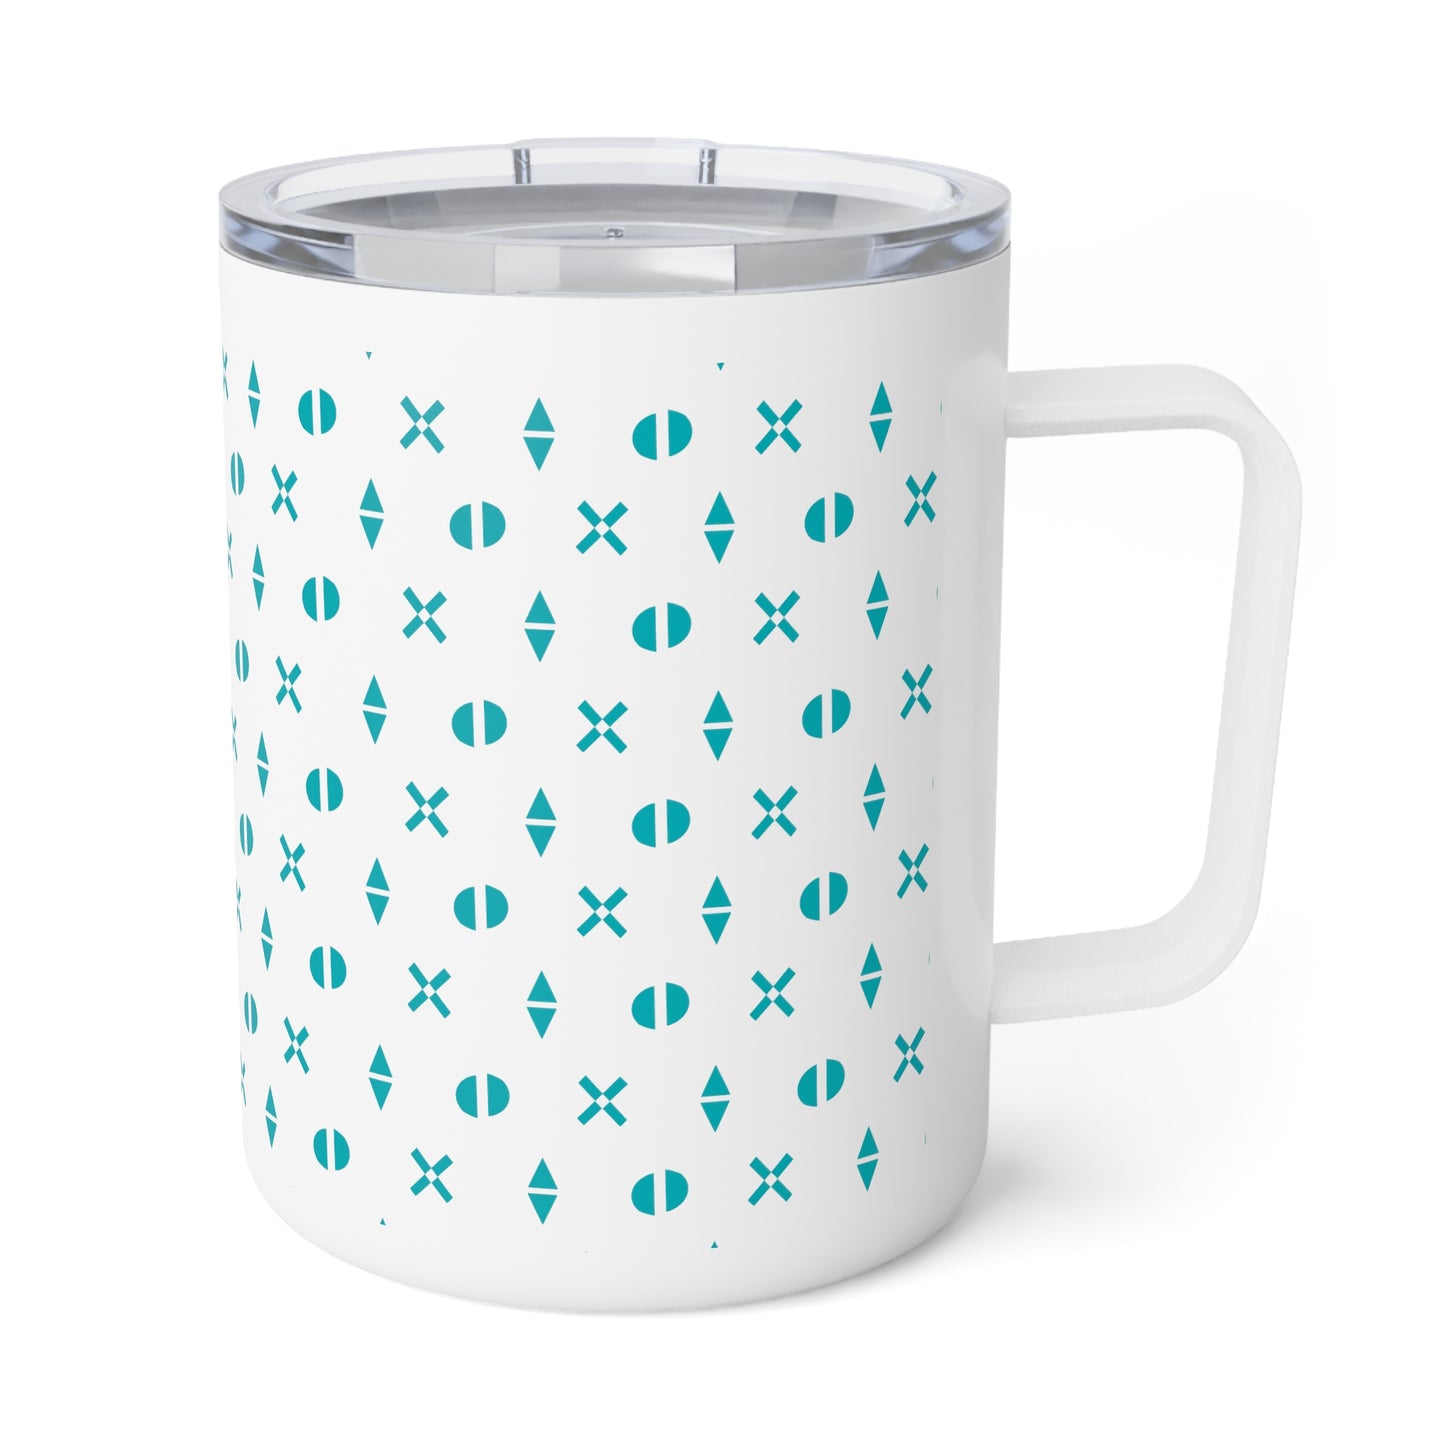 Hope Begins Insulated Coffee Mug